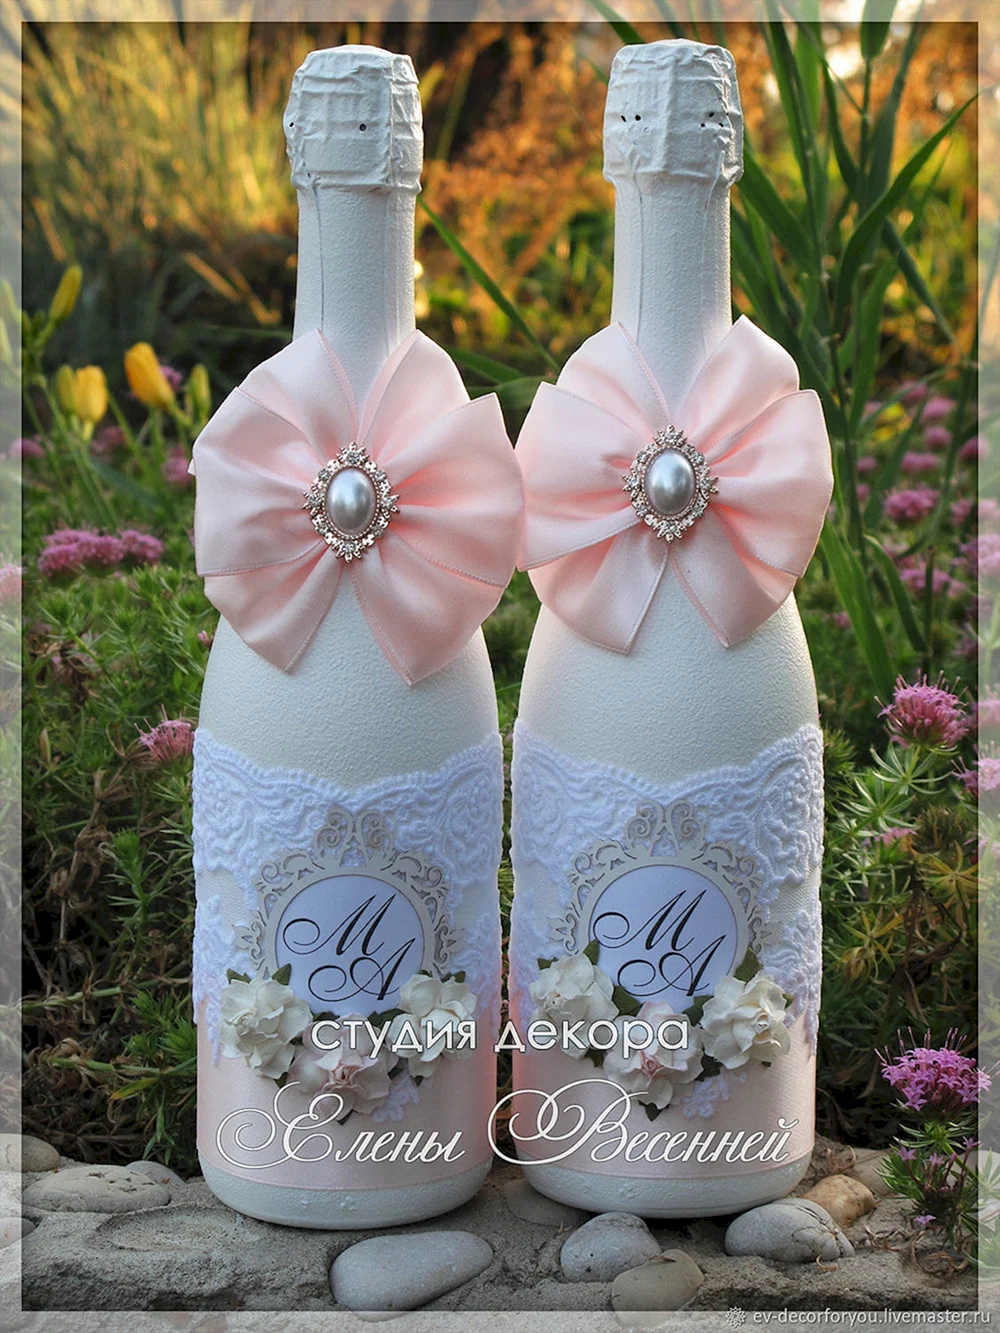 Свадебные бутылки с инициалами